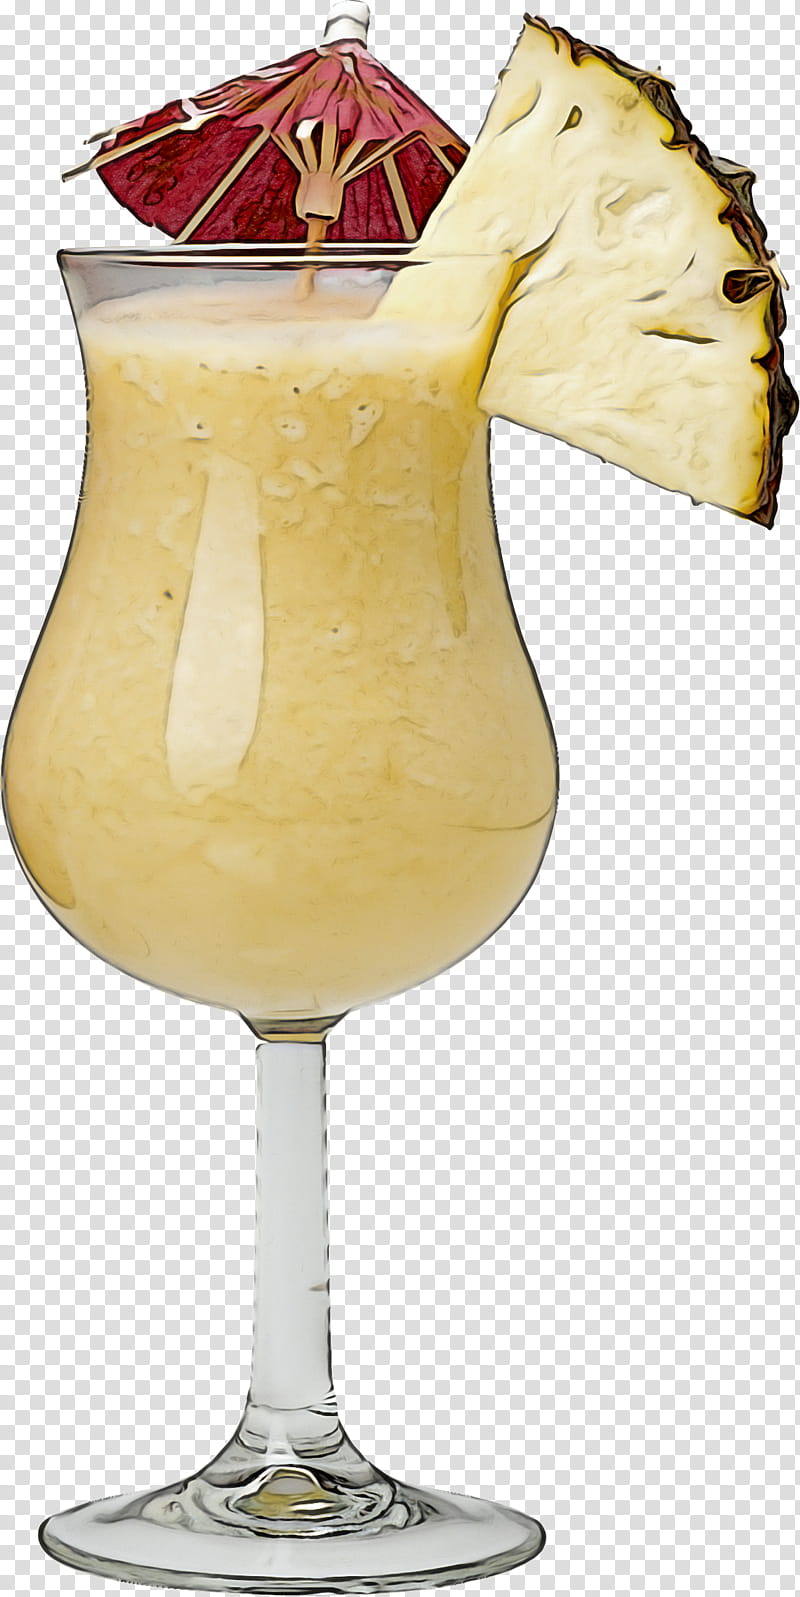 Milkshake, Drink, Batida, Champagne Cocktail, Cocktail Garnish, Pineapple, Alcoholic Beverage, Nonalcoholic Beverage transparent background PNG clipart